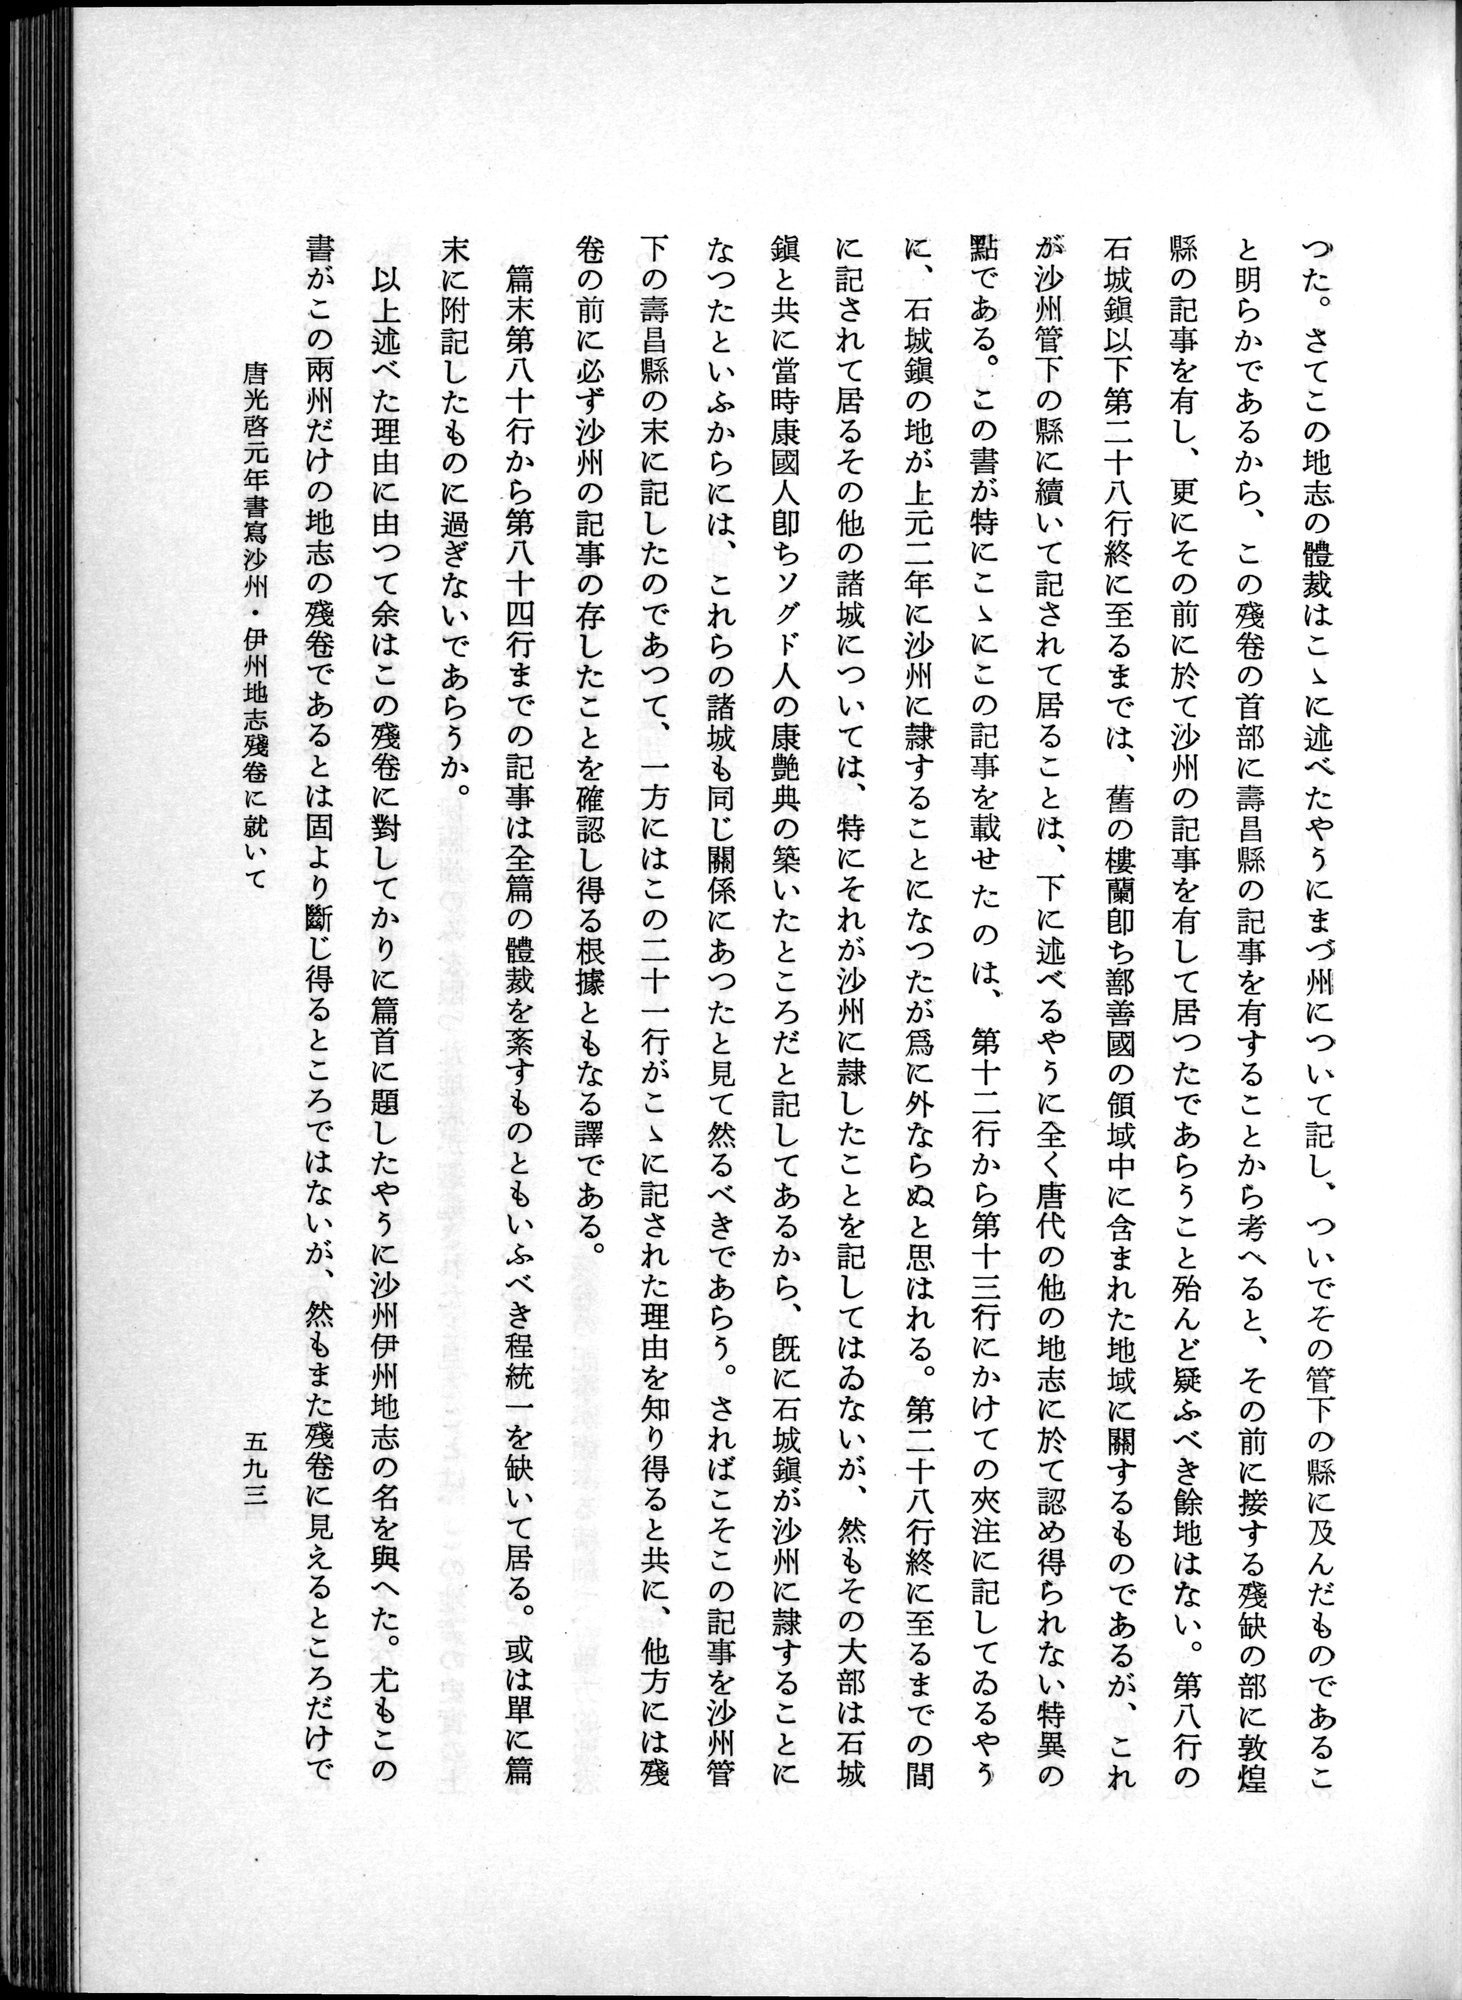 羽田博士史学論文集 : vol.1 / Page 631 (Grayscale High Resolution Image)